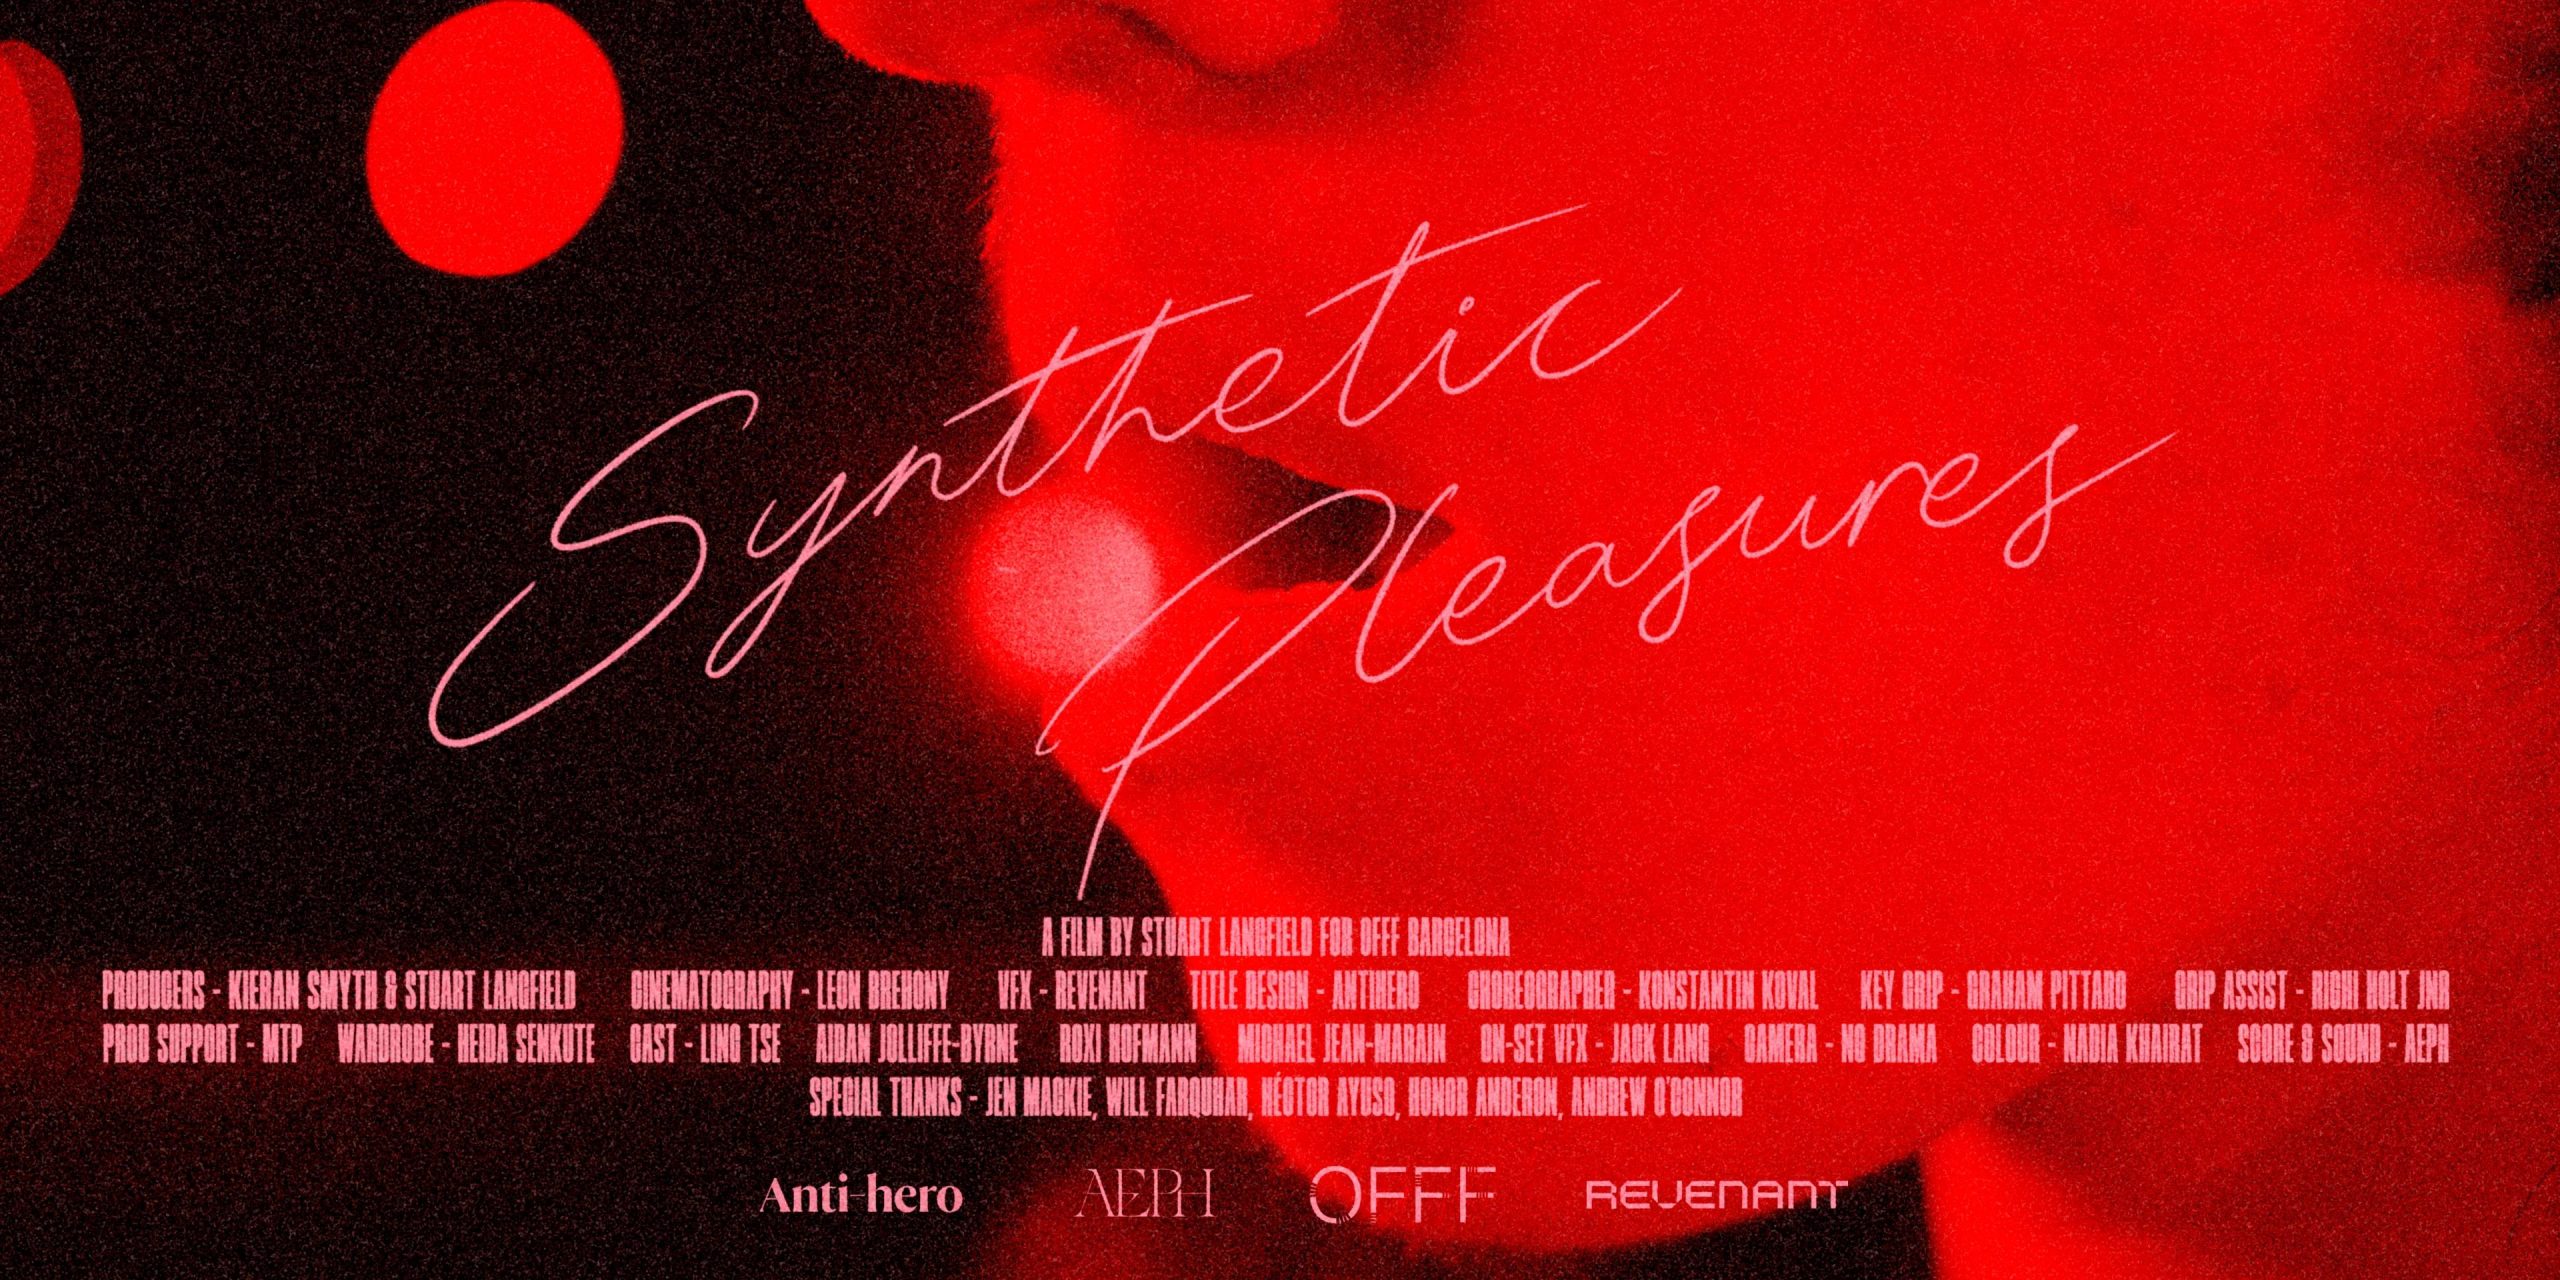 Synthetic Pleasures on Vimeo [Video]